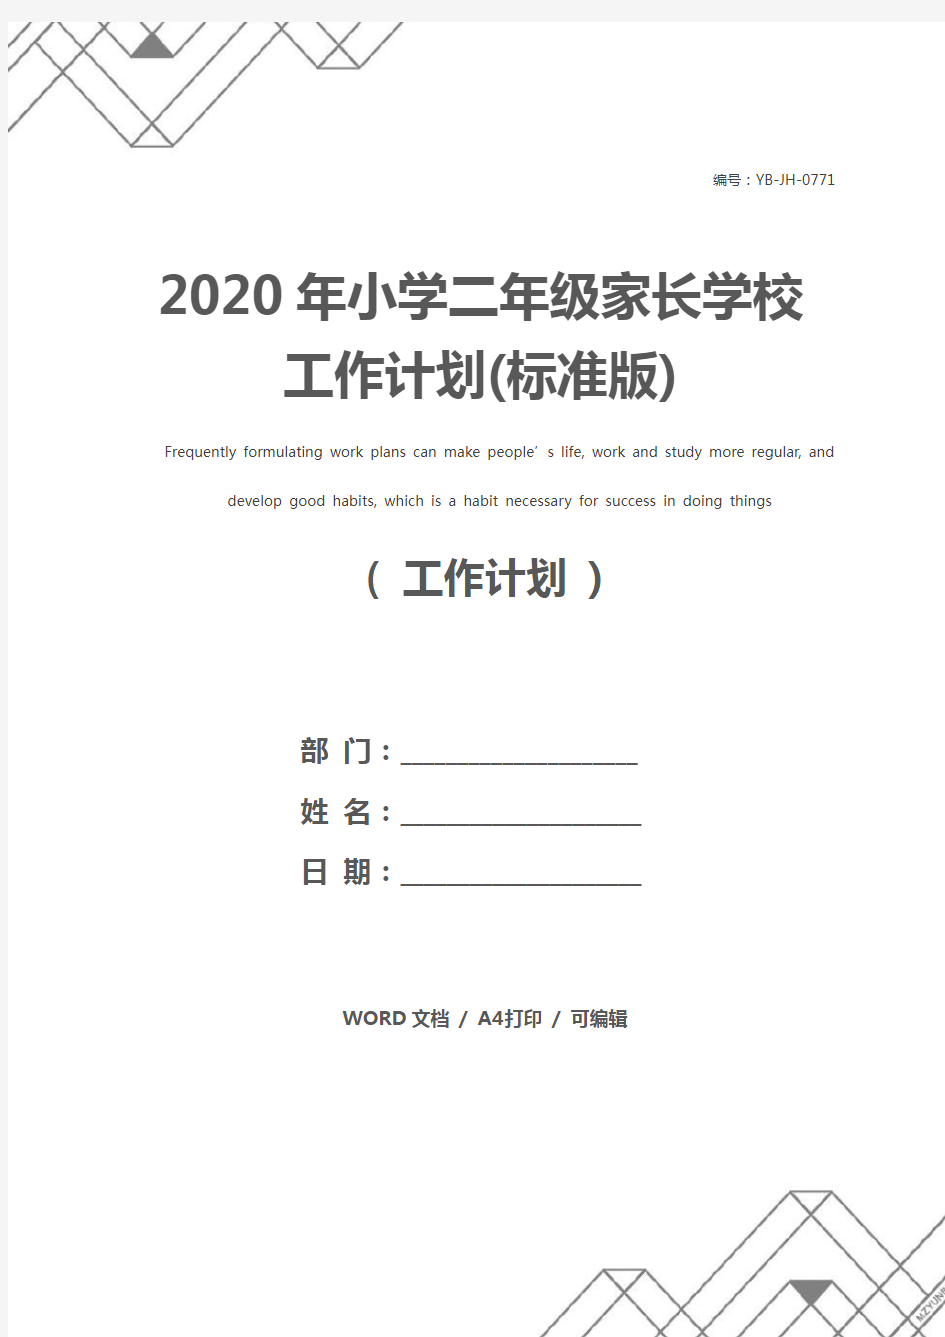 2020年小学二年级家长学校工作计划(标准版)